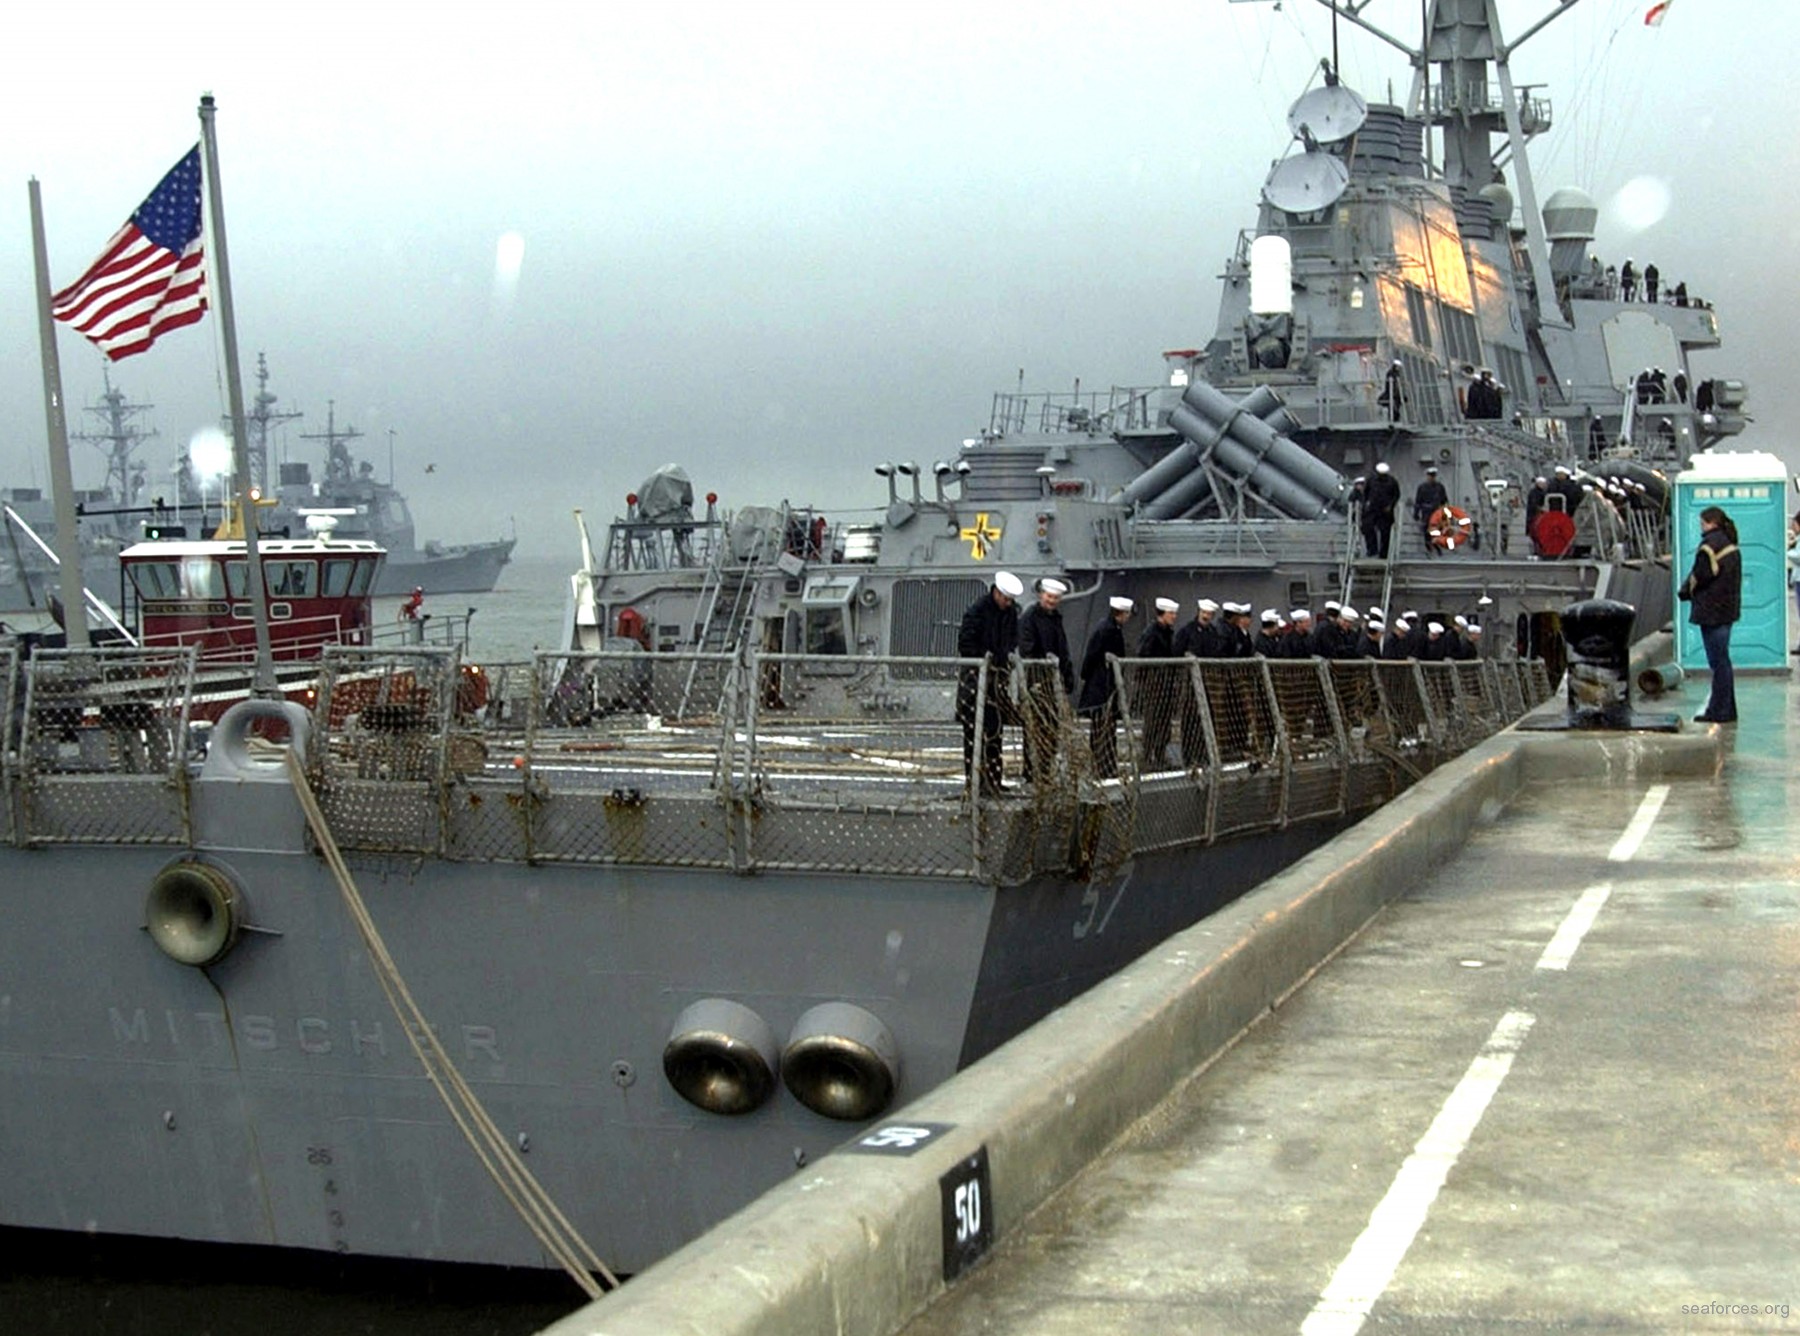 ddg-57 uss mitscher guided missile destroyer us navy 75